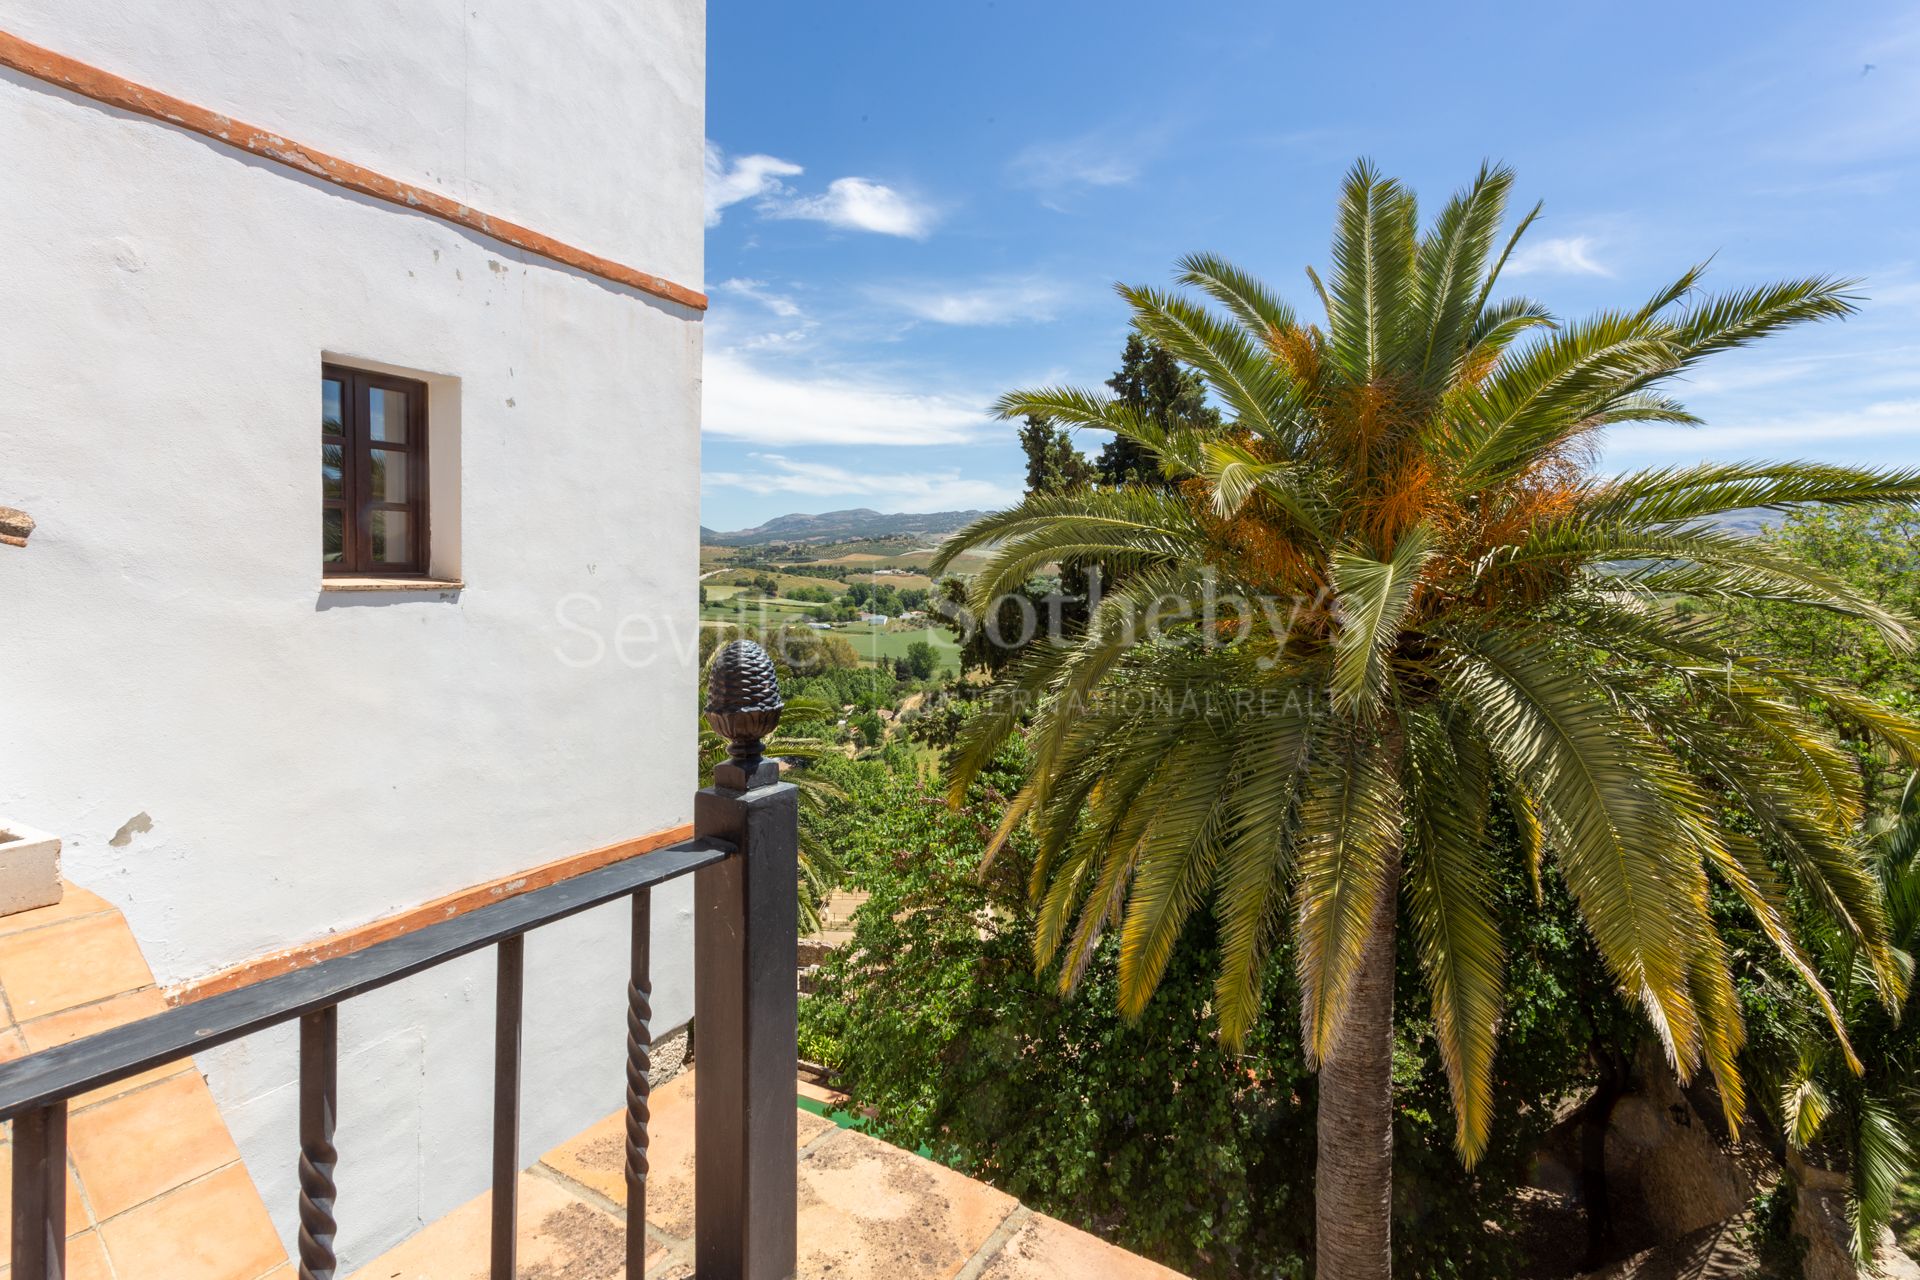 Vivienda singular de dos plantas con vistas a la Sierra en casa señorial del S.XVII con piscina y solarium